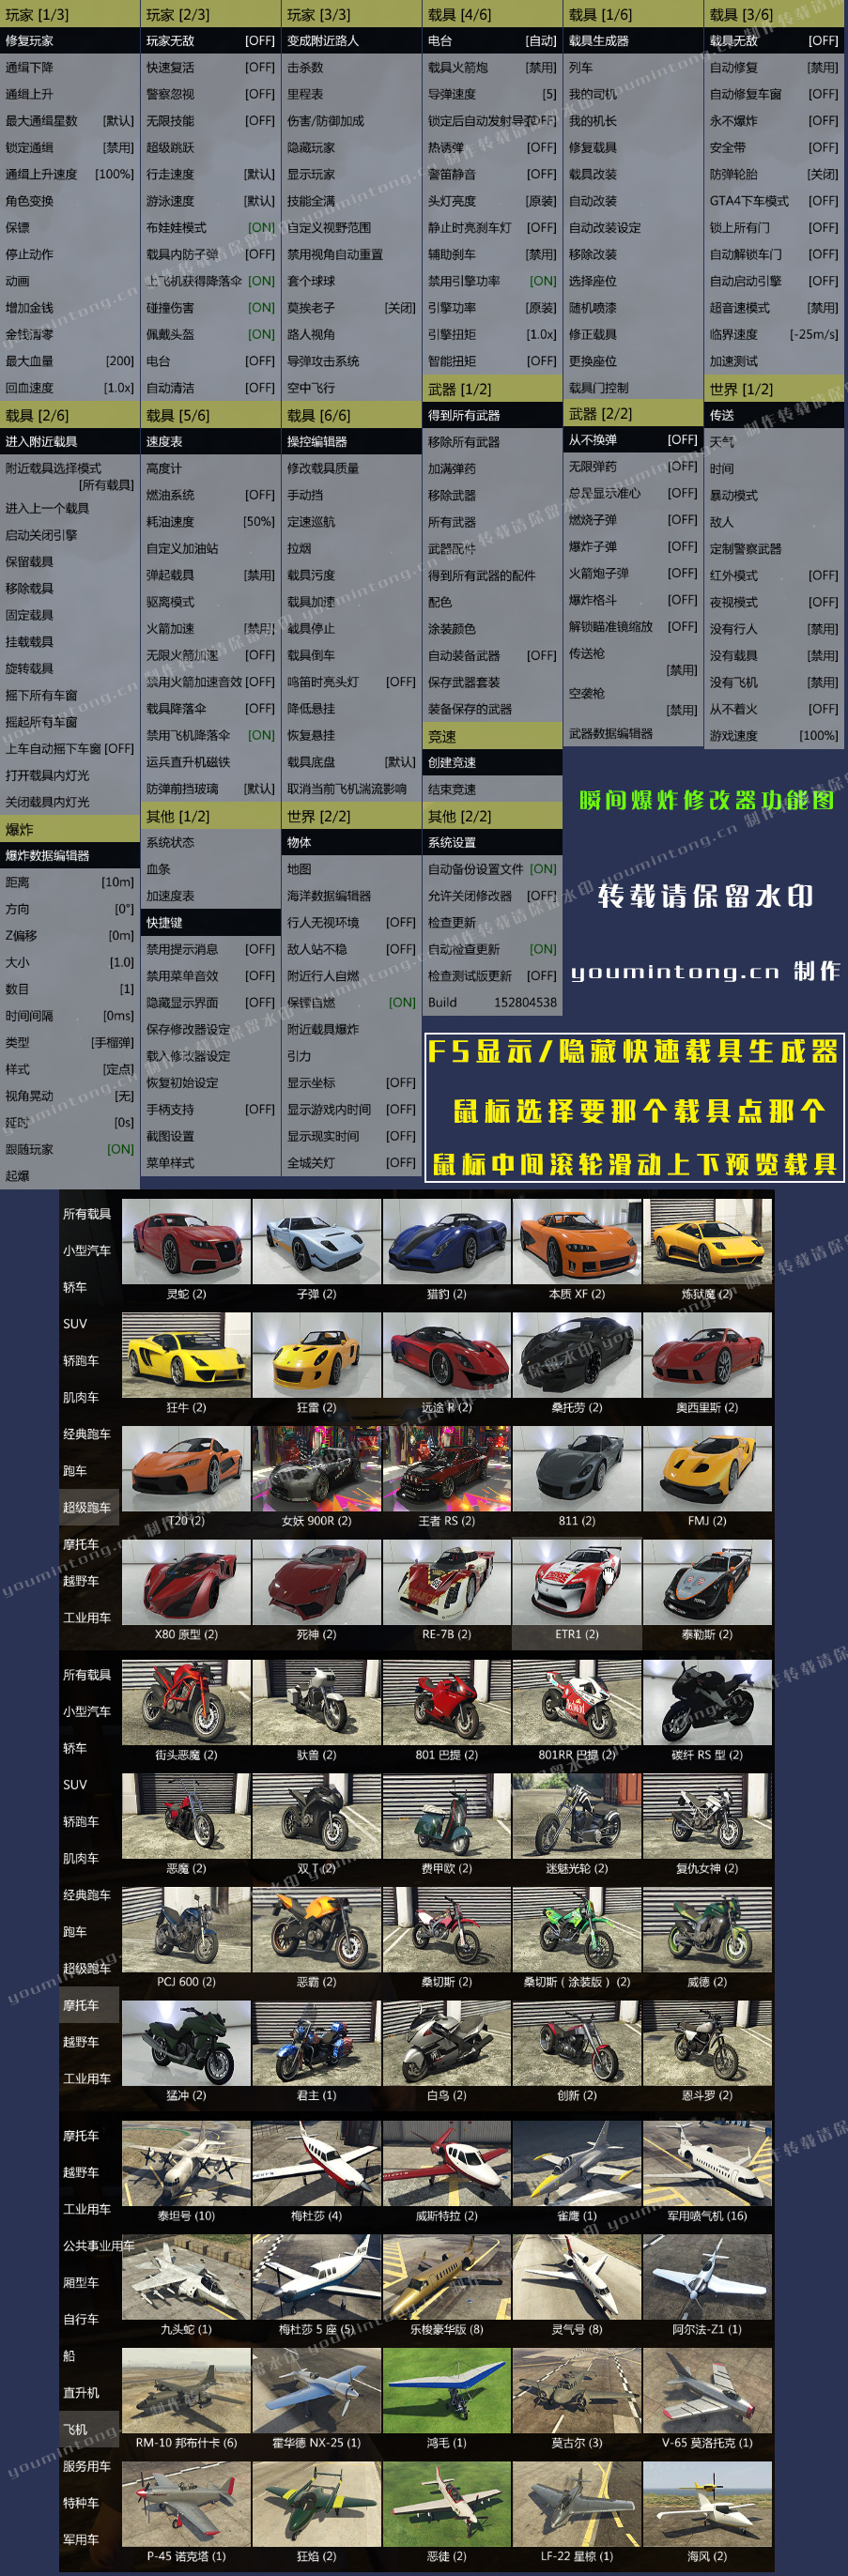 《侠盗猎车手5》GTA5瞬间爆炸修改器 v1.60 中文英文繁体三合一版本 小白一键启动版 下载